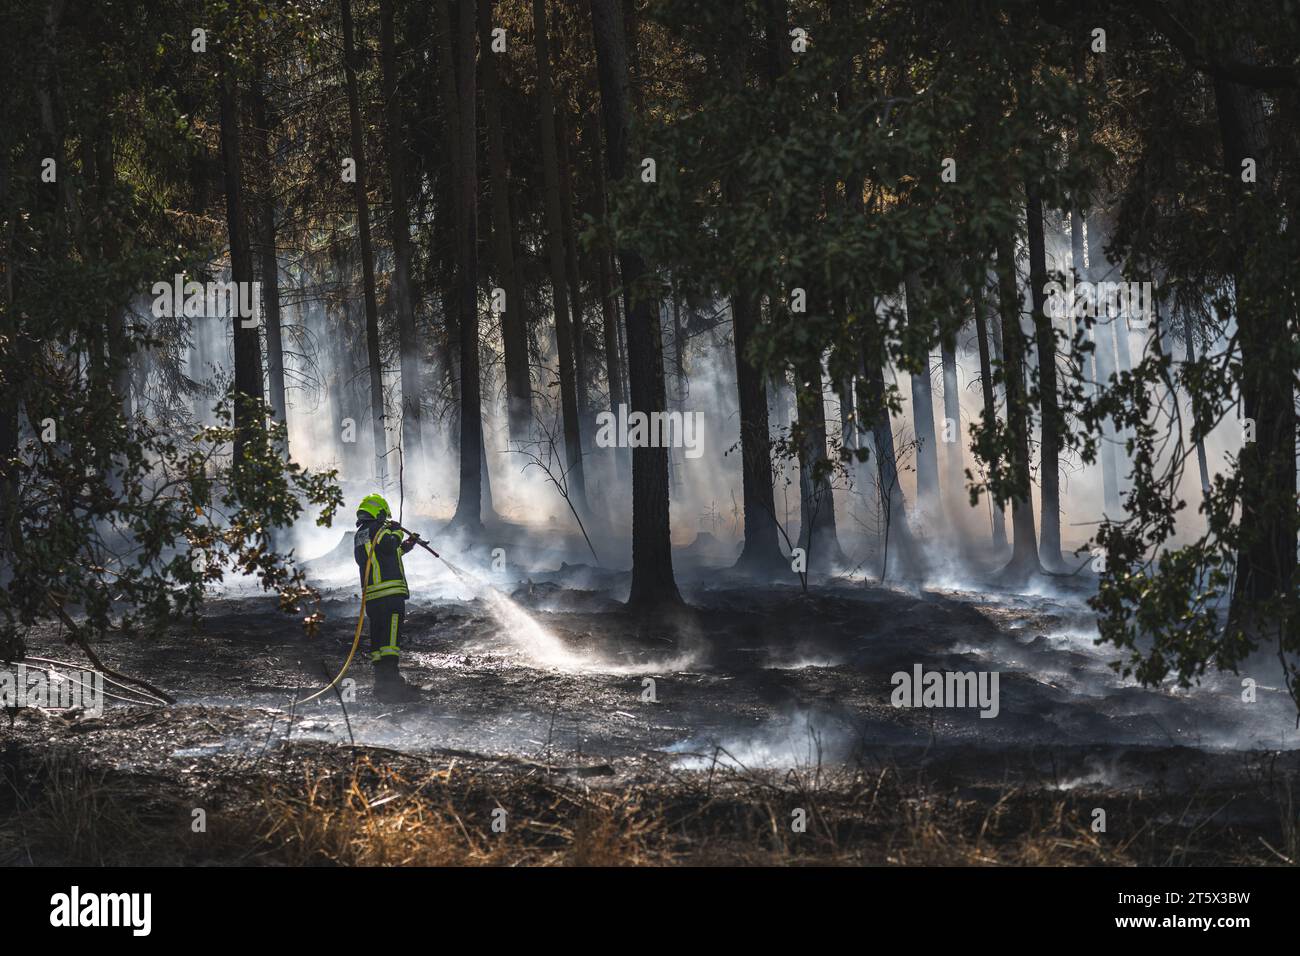 Ein Feuerwehrmann bekämpft einen Waldbrand. Rauch steigt auf, der Waldboden ist völlig verbrannt Stock Photo